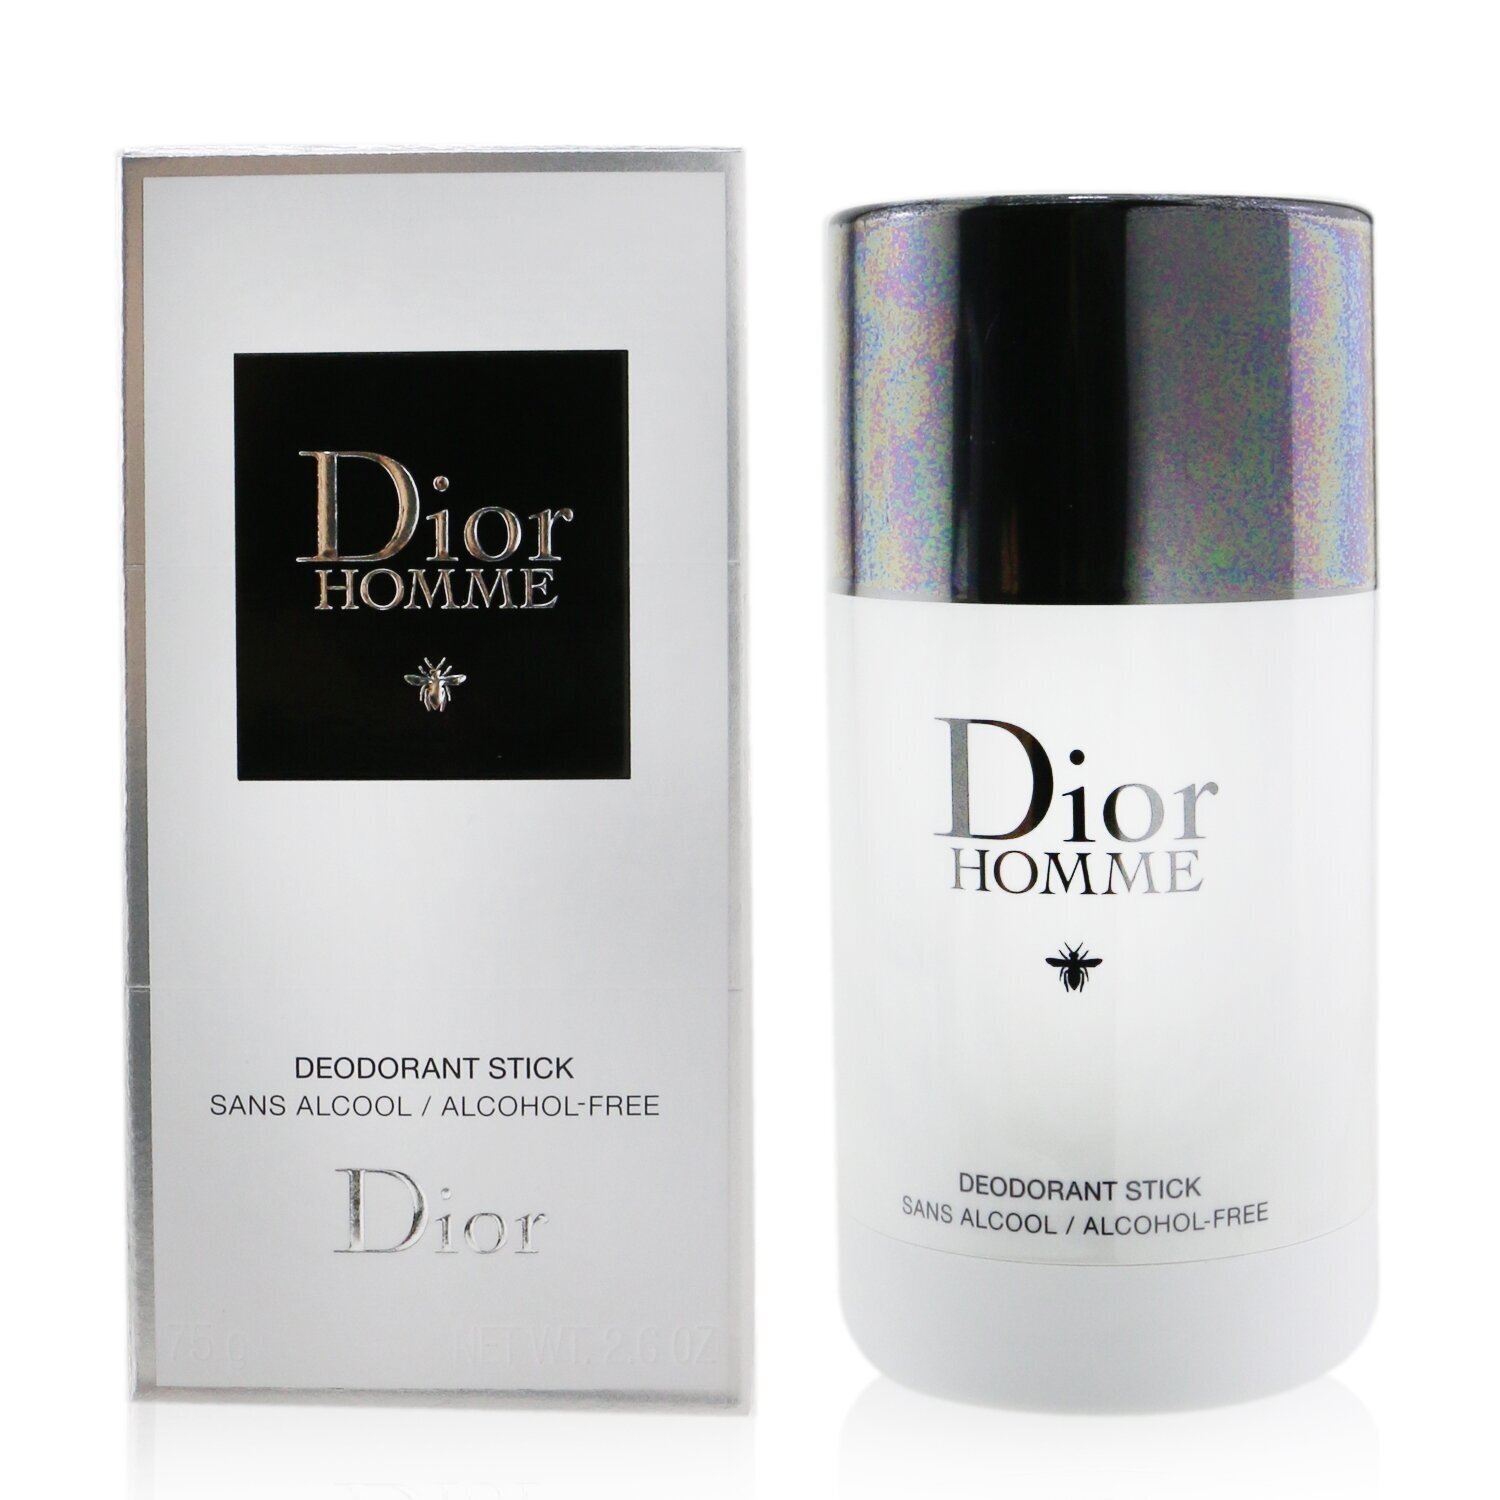 迪奧 Christian Dior - Dior Homme Deodorant Stick體香膏